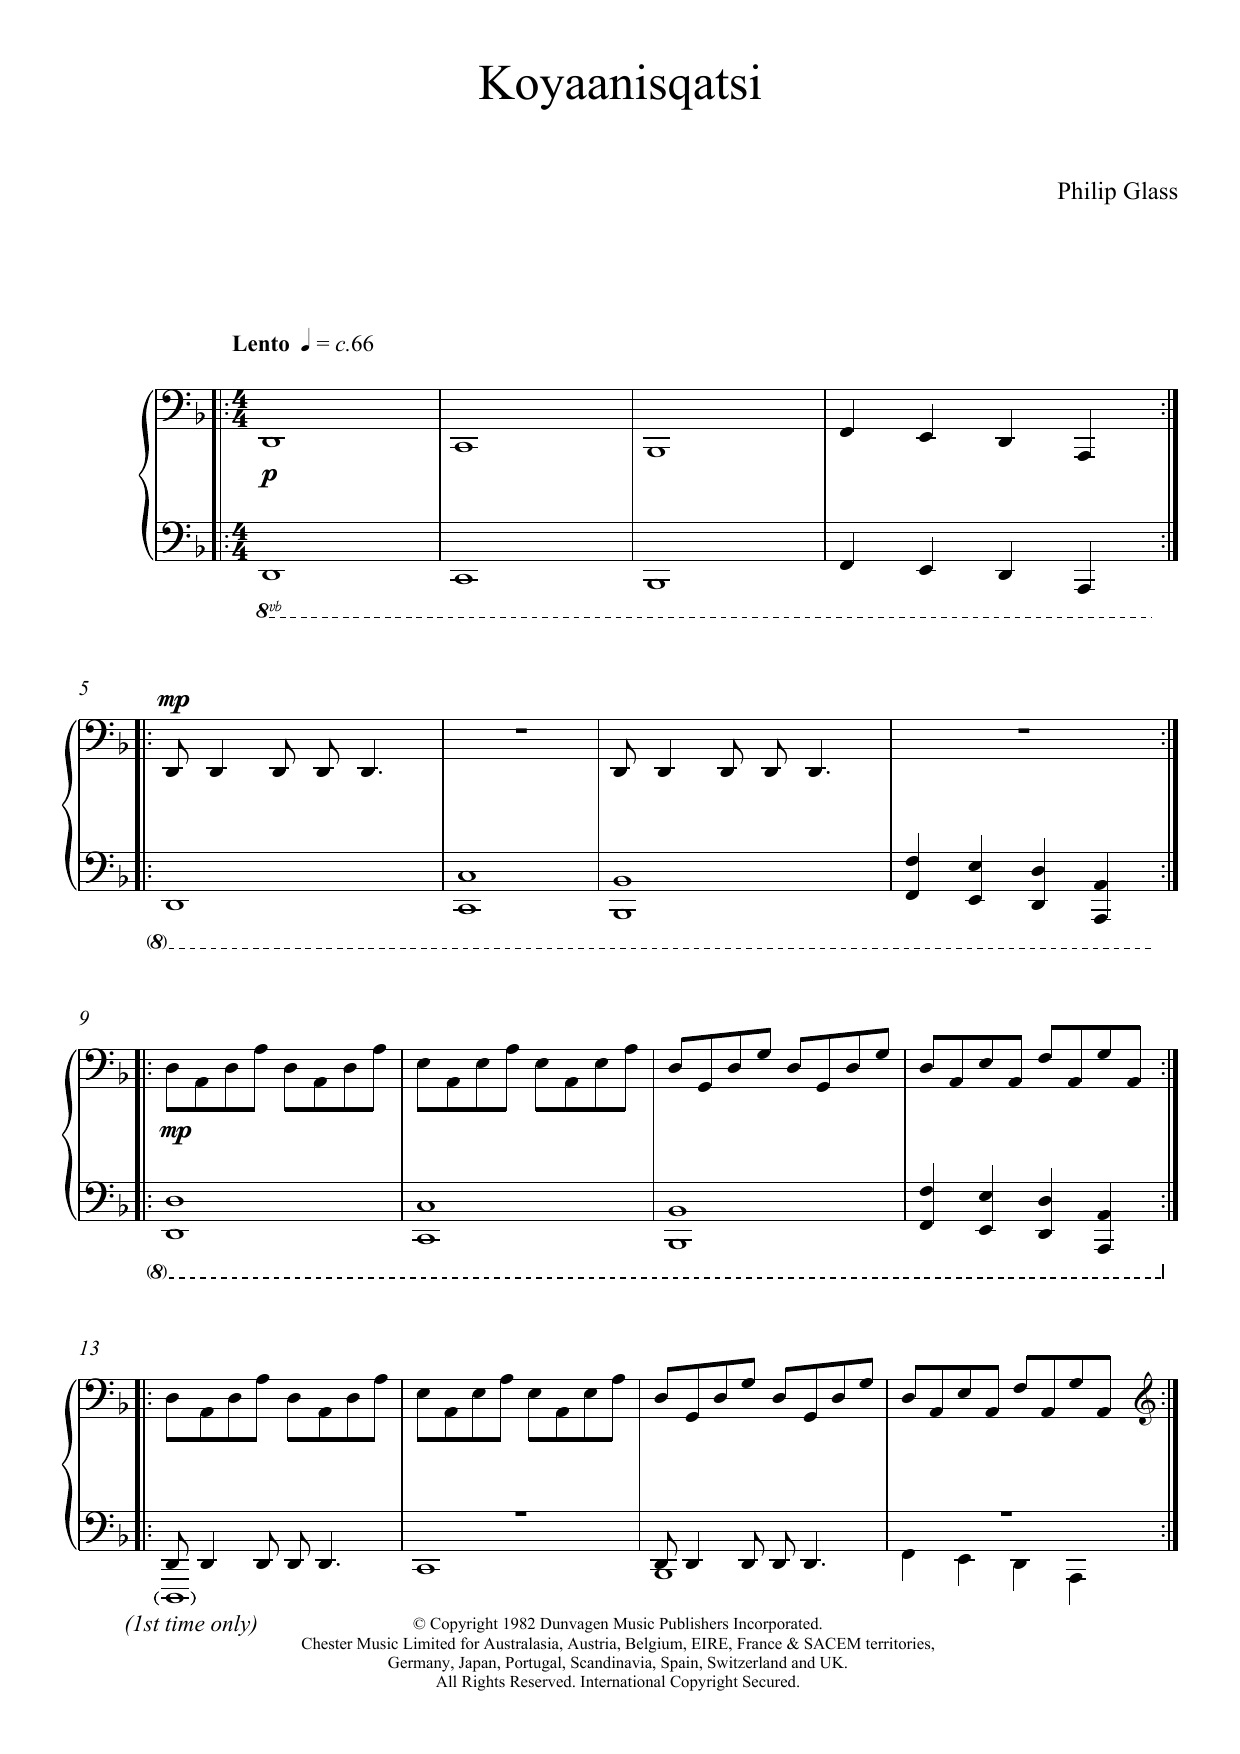 Download Philip Glass Koyaanisqatsi Sheet Music